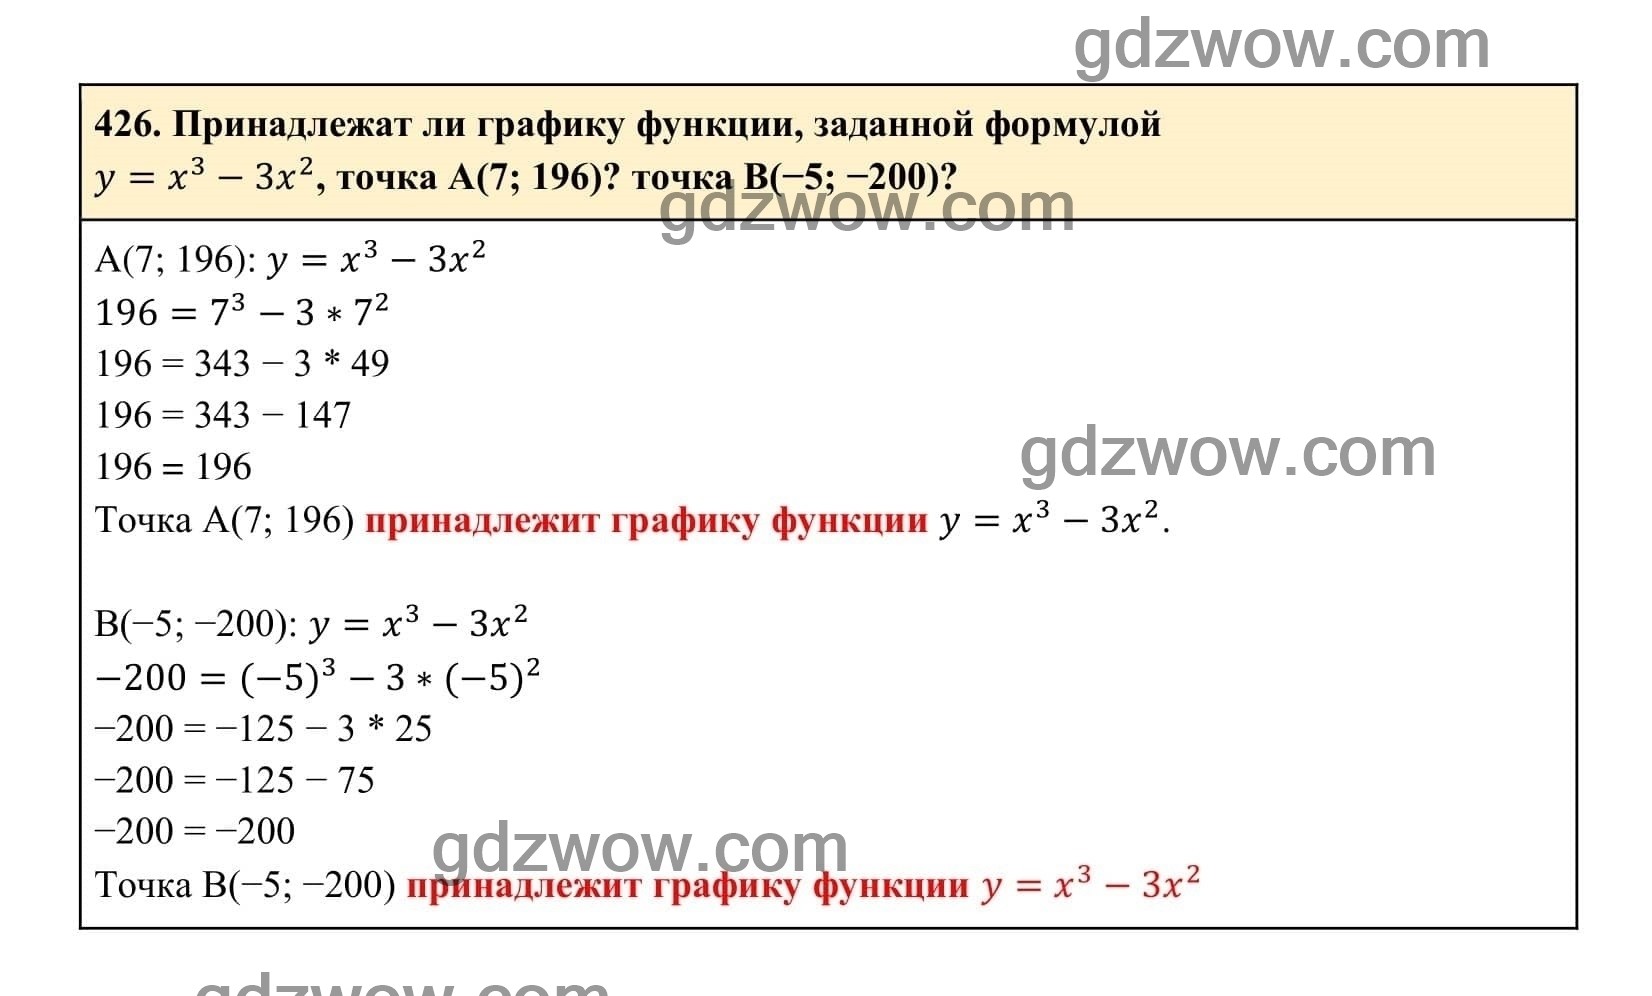 Упражнение 426 - ГДЗ по Алгебре 7 класс Учебник Макарычев (решебник) - GDZwow